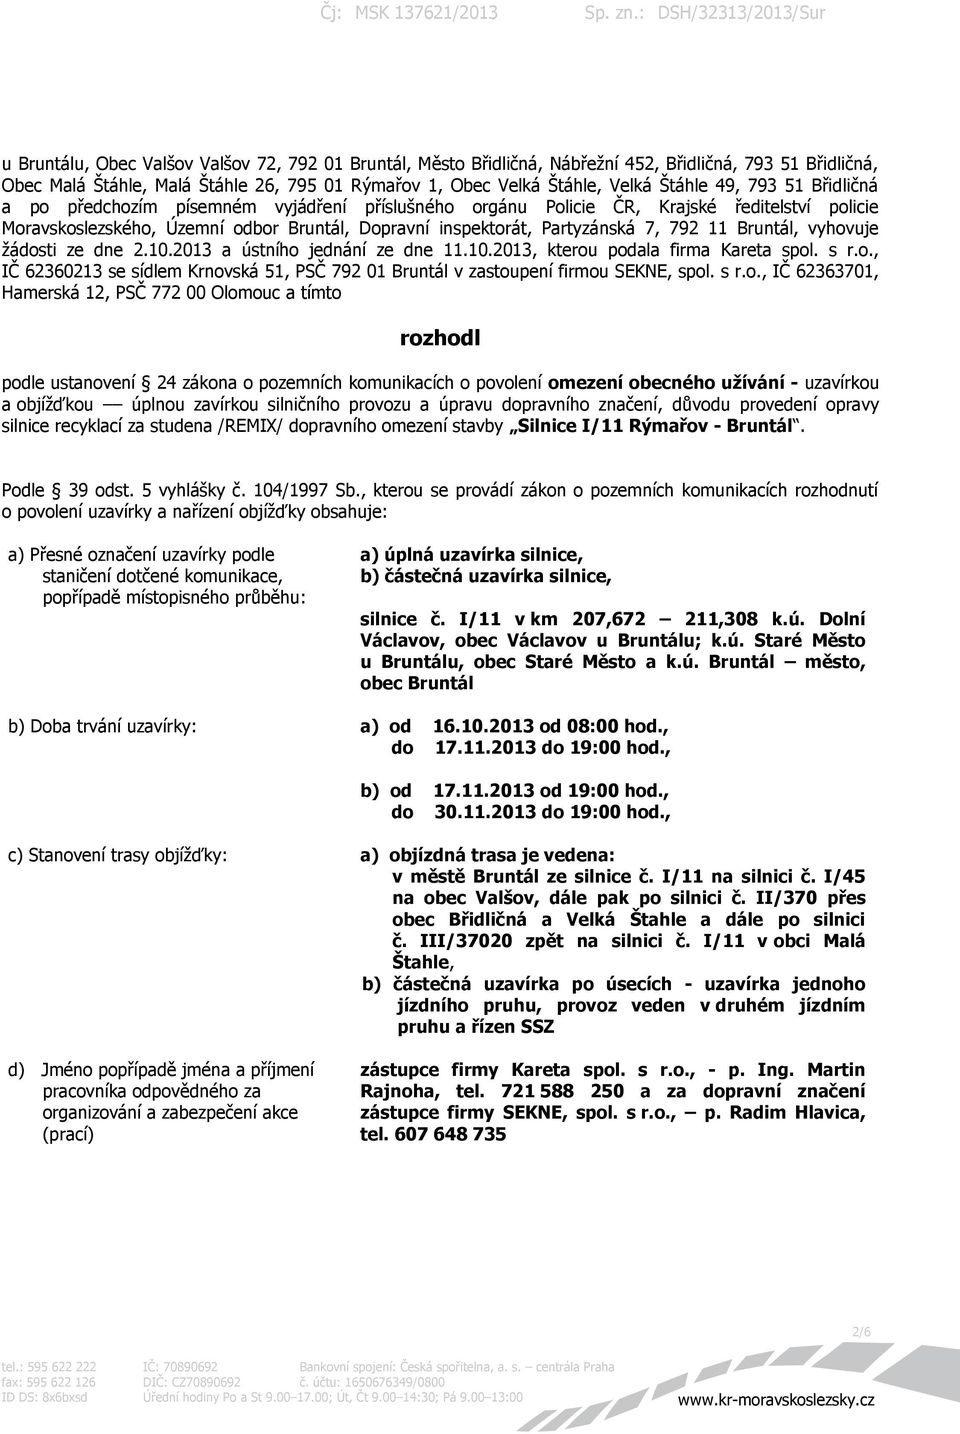 Bruntál, vyhovuje žádosti ze dne 2.10.2013 a ústního jednání ze dne 11.10.2013, kterou podala firma Kareta spol. s r.o., IČ 62360213 se sídlem Krnovská 51, PSČ 792 01 Bruntál v zastoupení firmou SEKNE, spol.